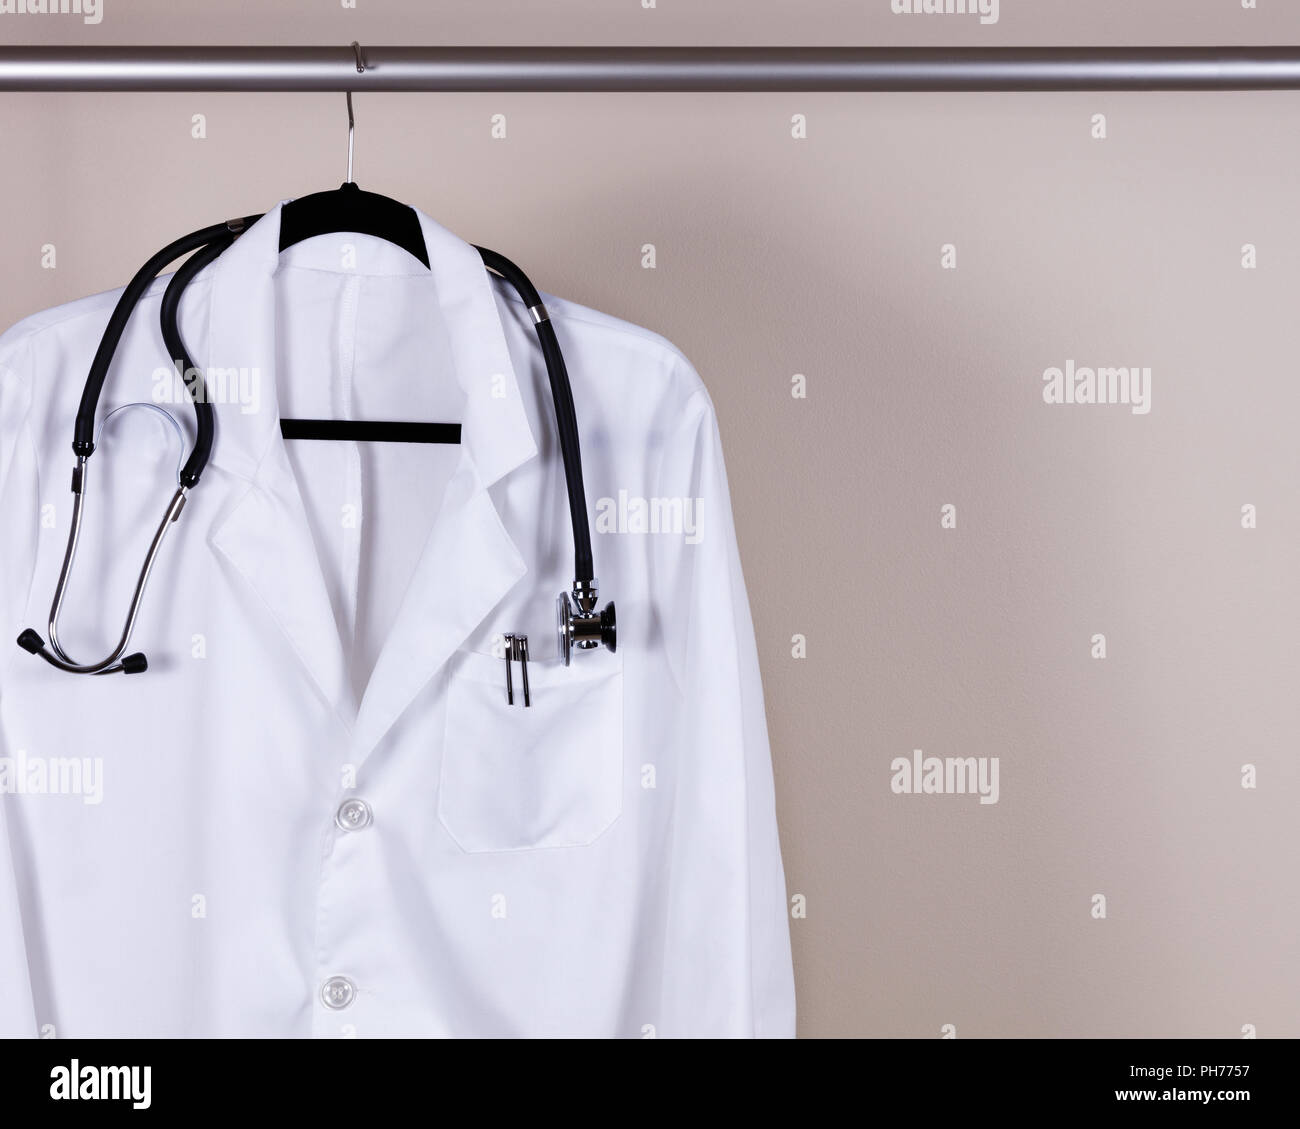 Blanc manteau avec consultation médicale stéthoscope et crayons sur hanger Banque D'Images